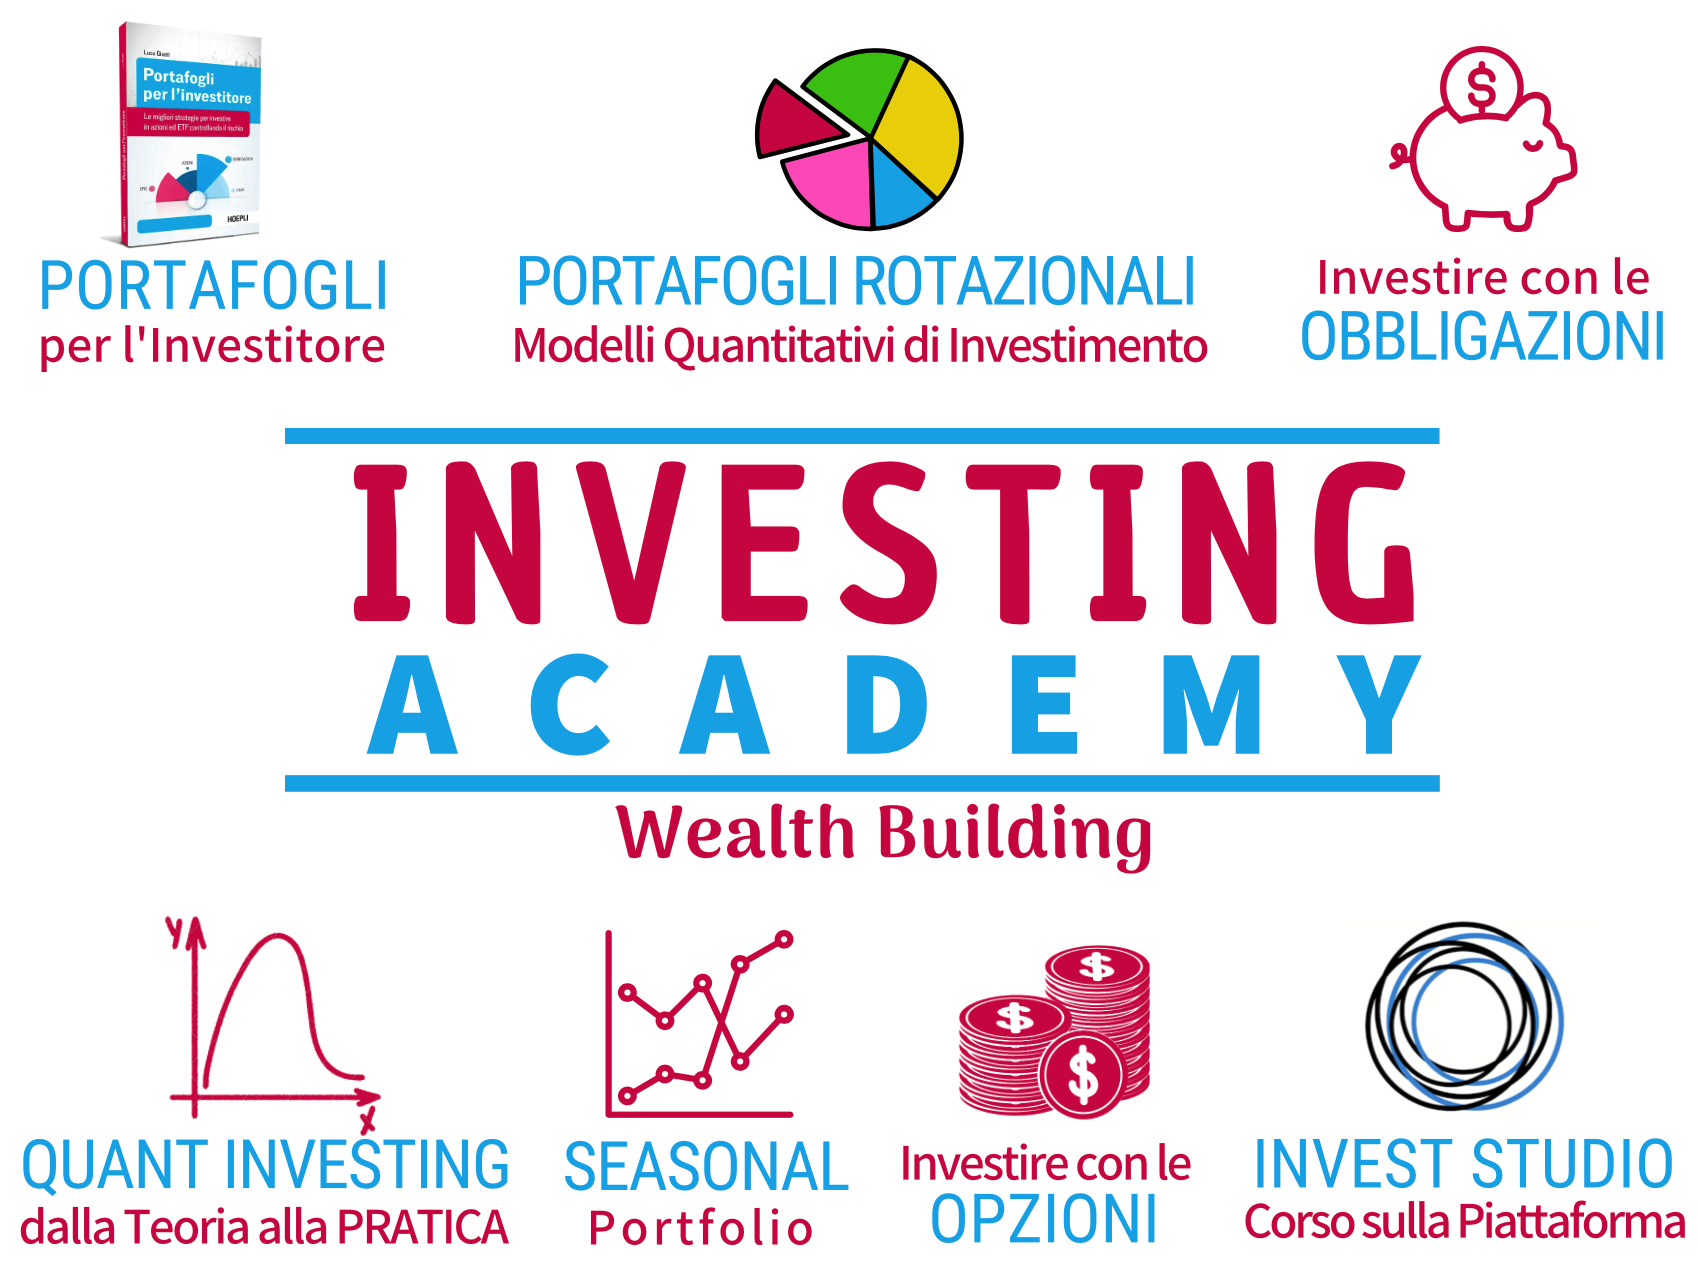 Locandina Academy dedicata ad investire in obbligazioni, come fare investimenti obbligazionari